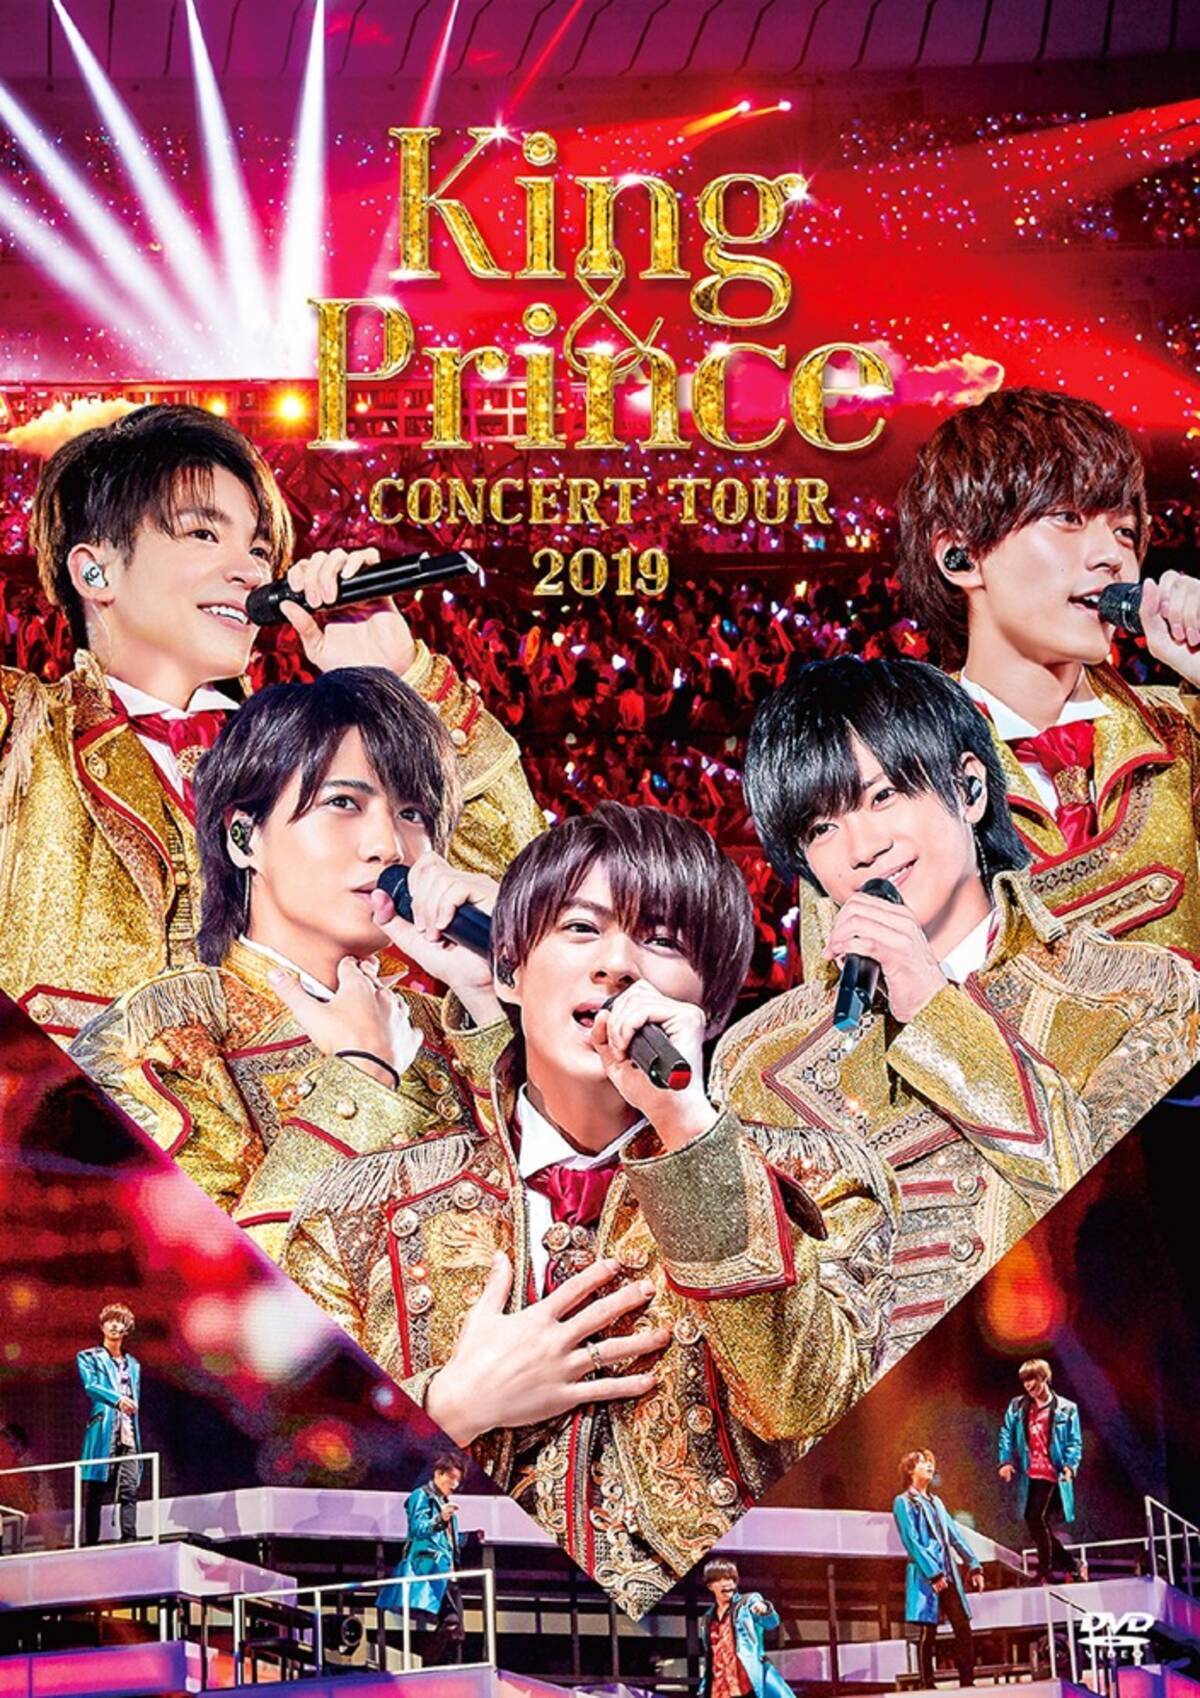 キンプリ ライブblu Ray Dvd King Prince Concert Tour 19 ジャケット写真公開 19年12月11日 エキサイトニュース